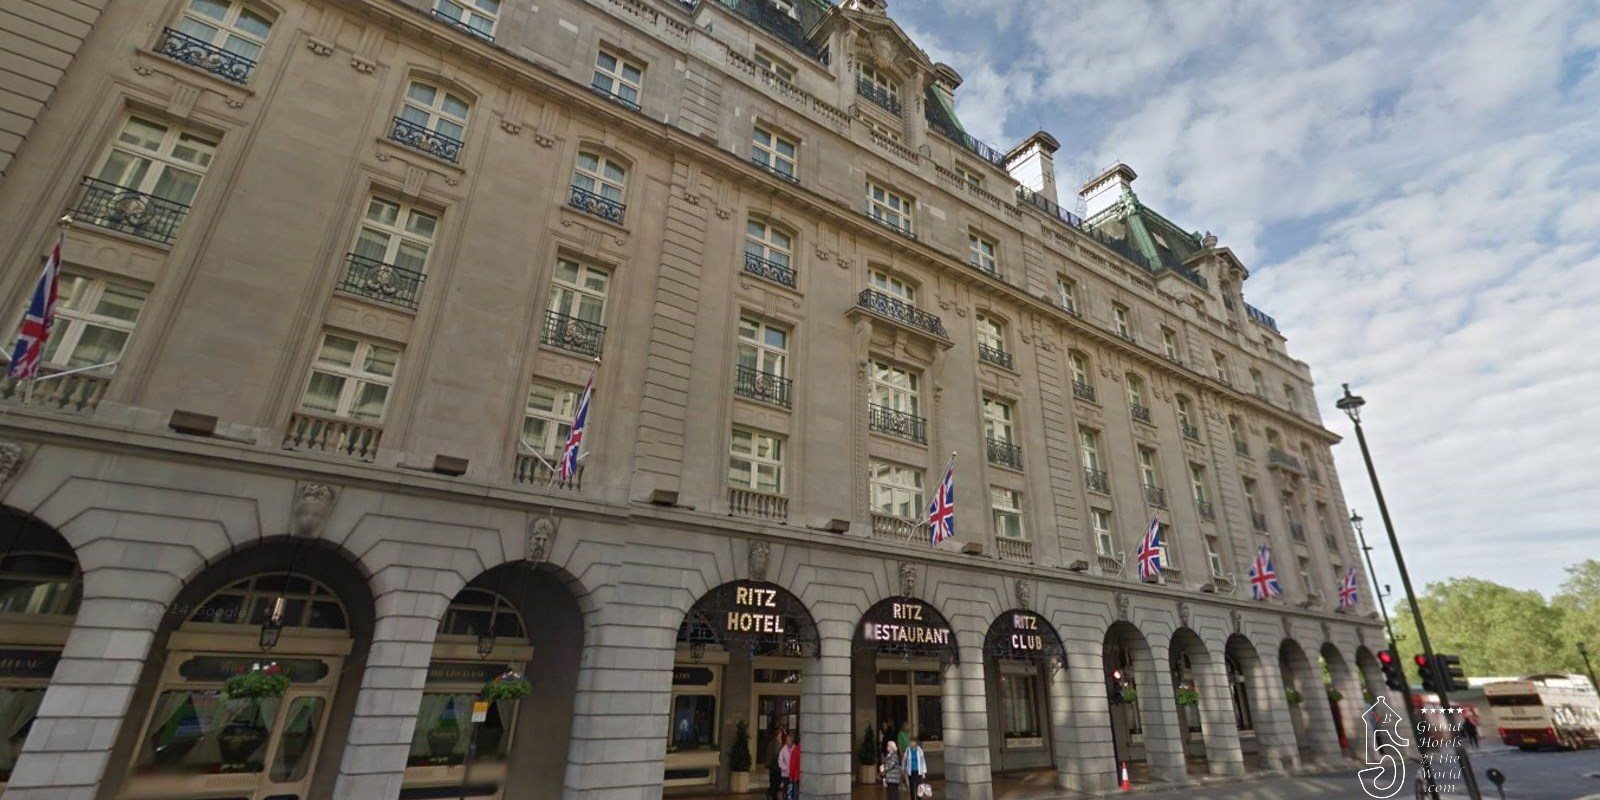 Hotel Ritz in London